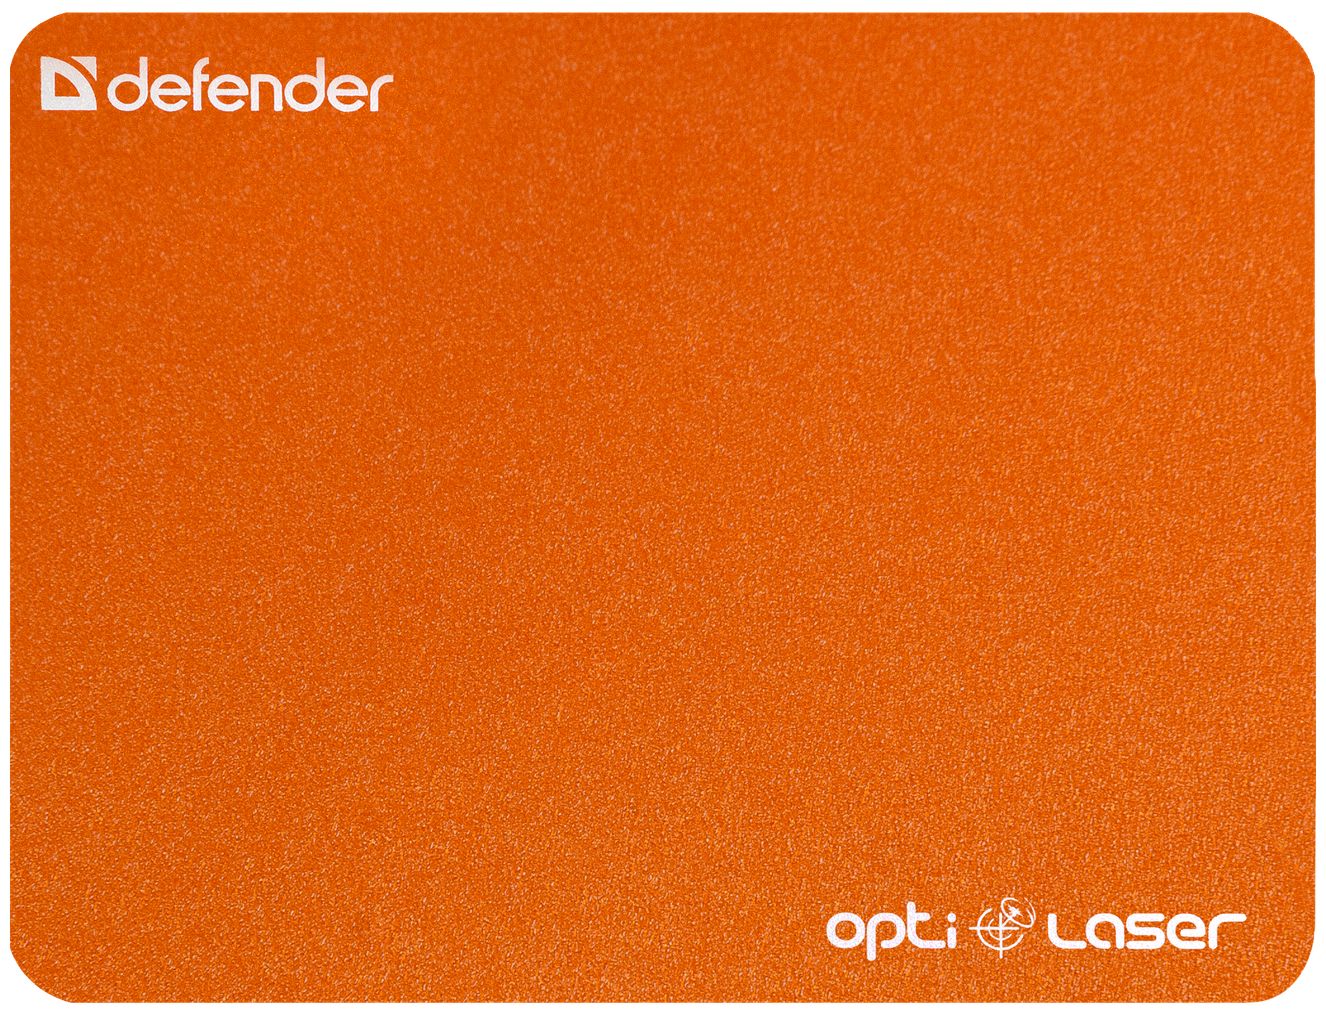 Defender Silver Laser 50410 defender freemotion b505